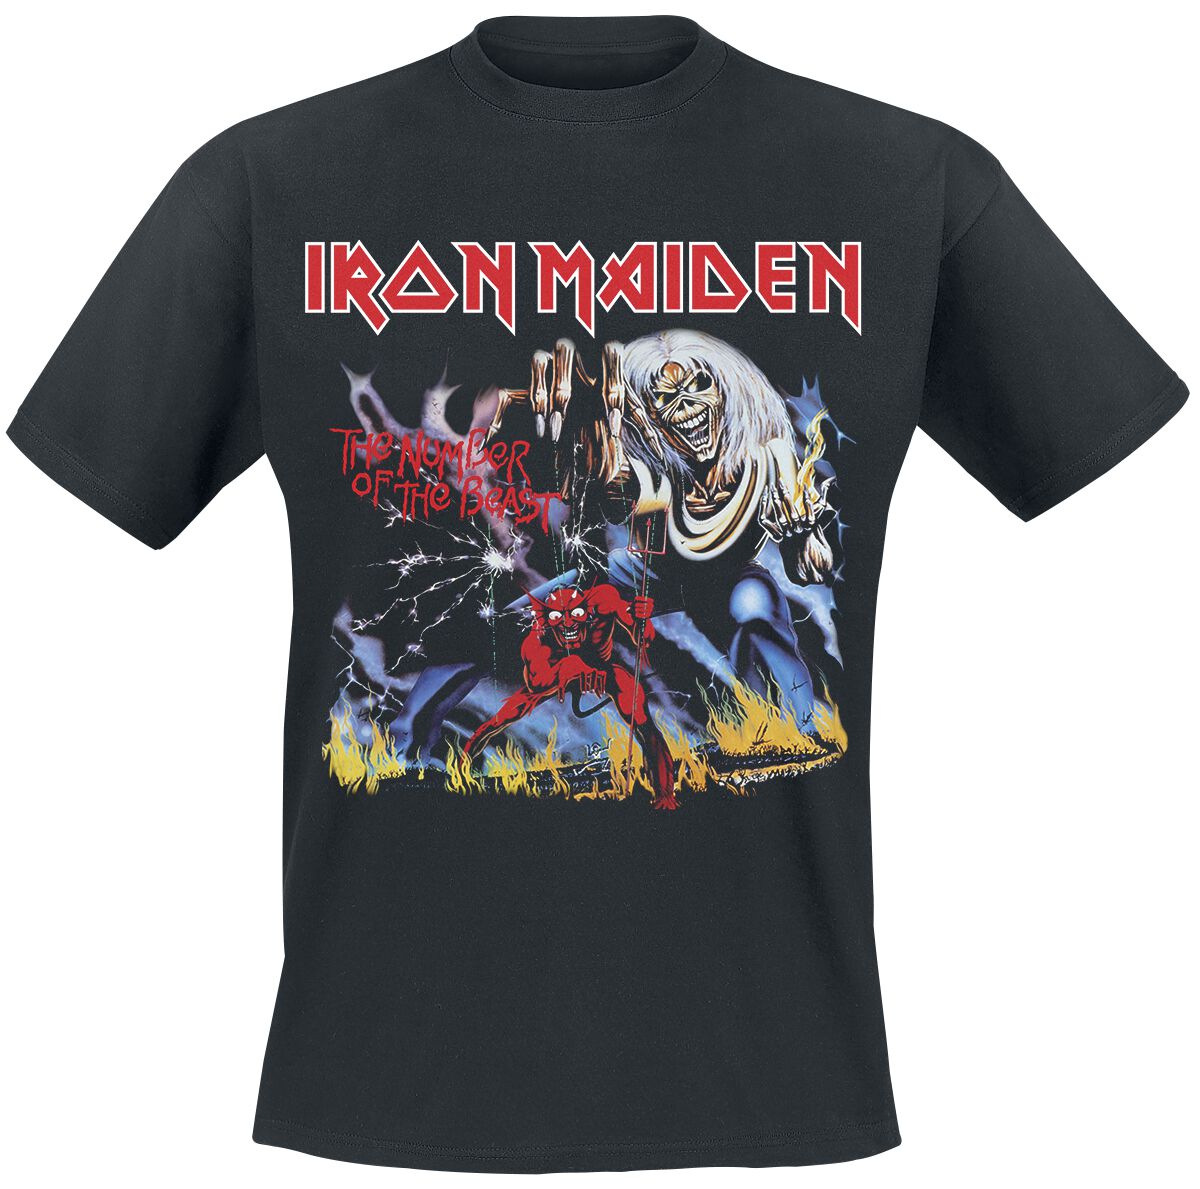 Iron Maiden T-Shirt - Stranger Number Of The Beast - M bis 4XL - für Männer - Größe 3XL - schwarz  - Lizenziertes Merchandise!